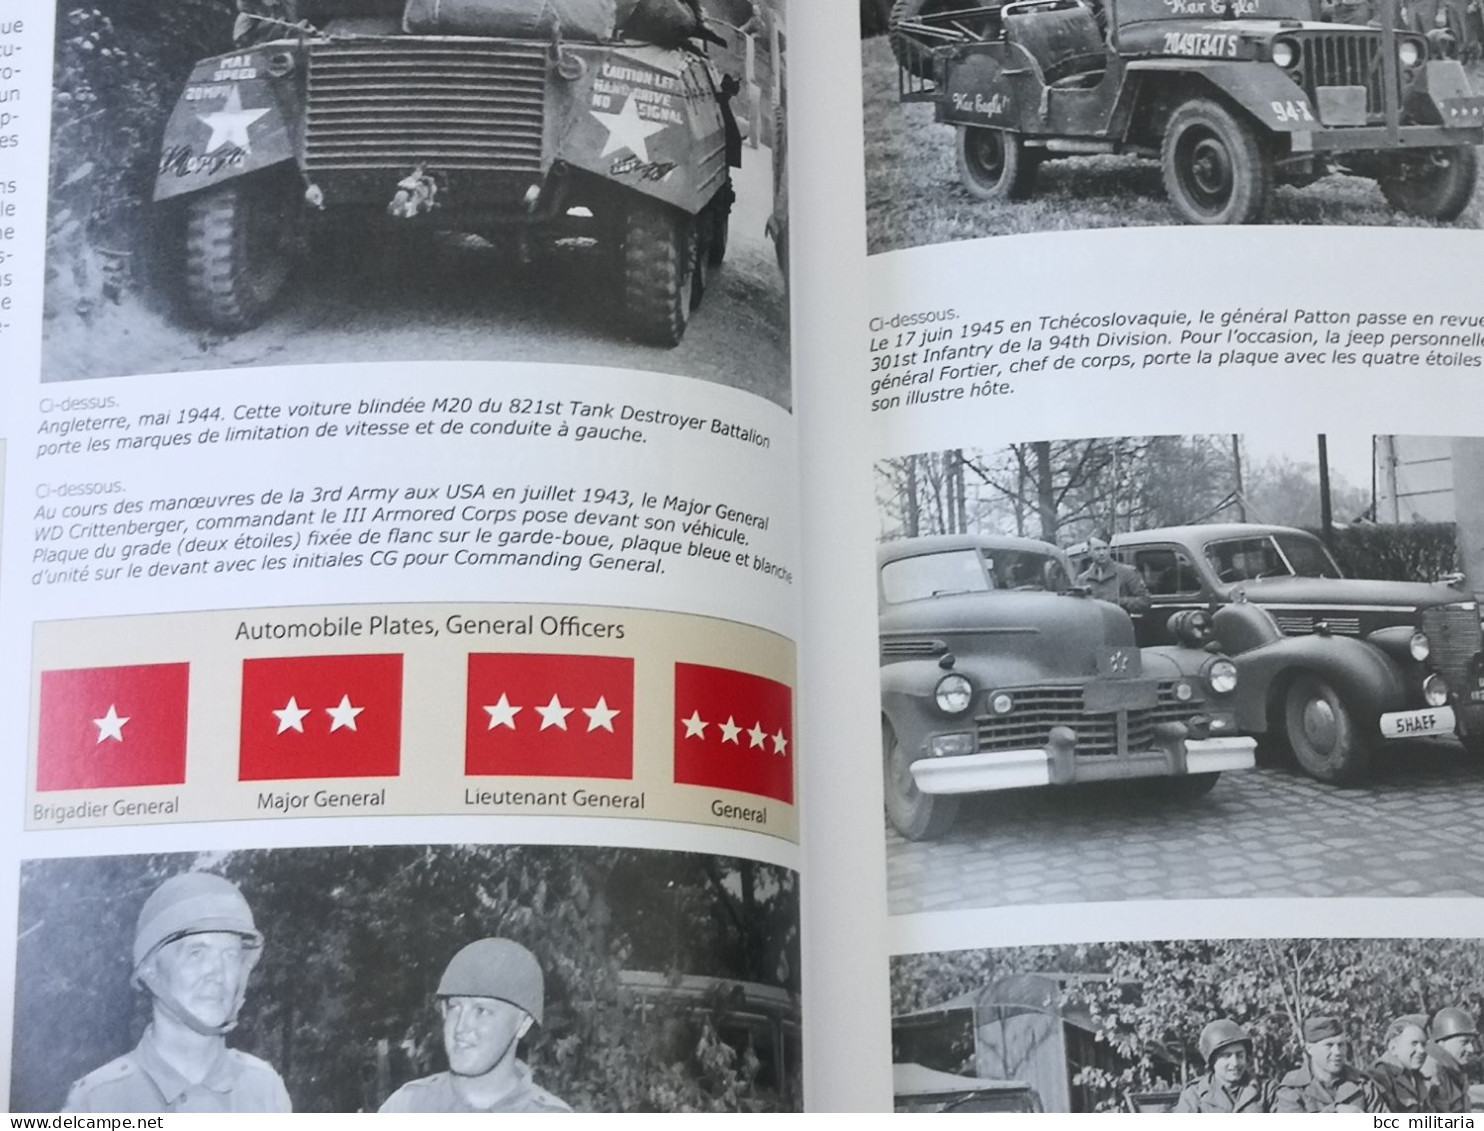 U.S. Army 1944. Les marquages des véhicules, par Jean Bouchery et Philippe C